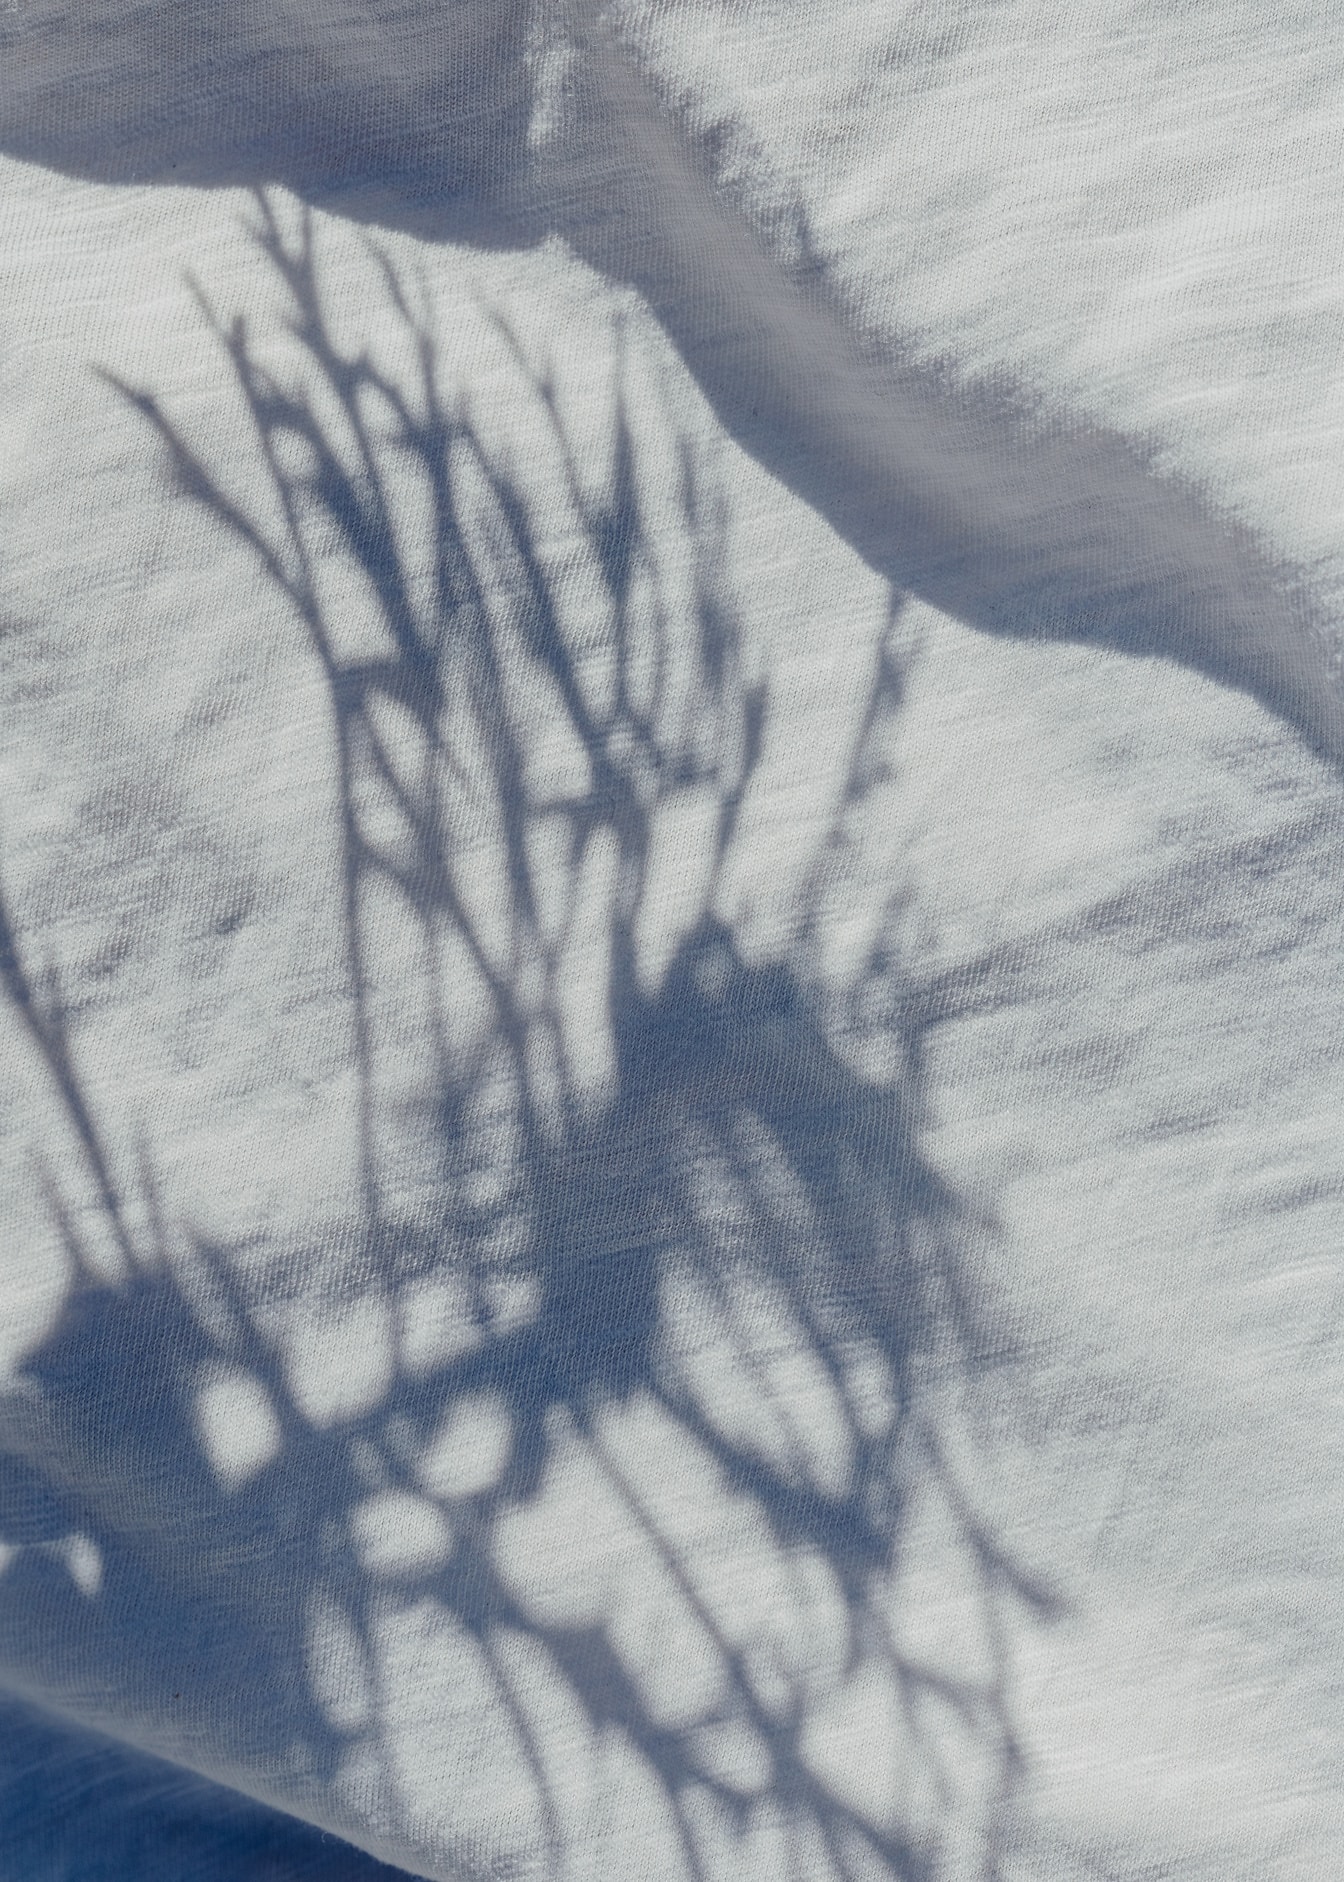 Schatten auf weißer Baumwolltextil-Nahaufnahme-Textur